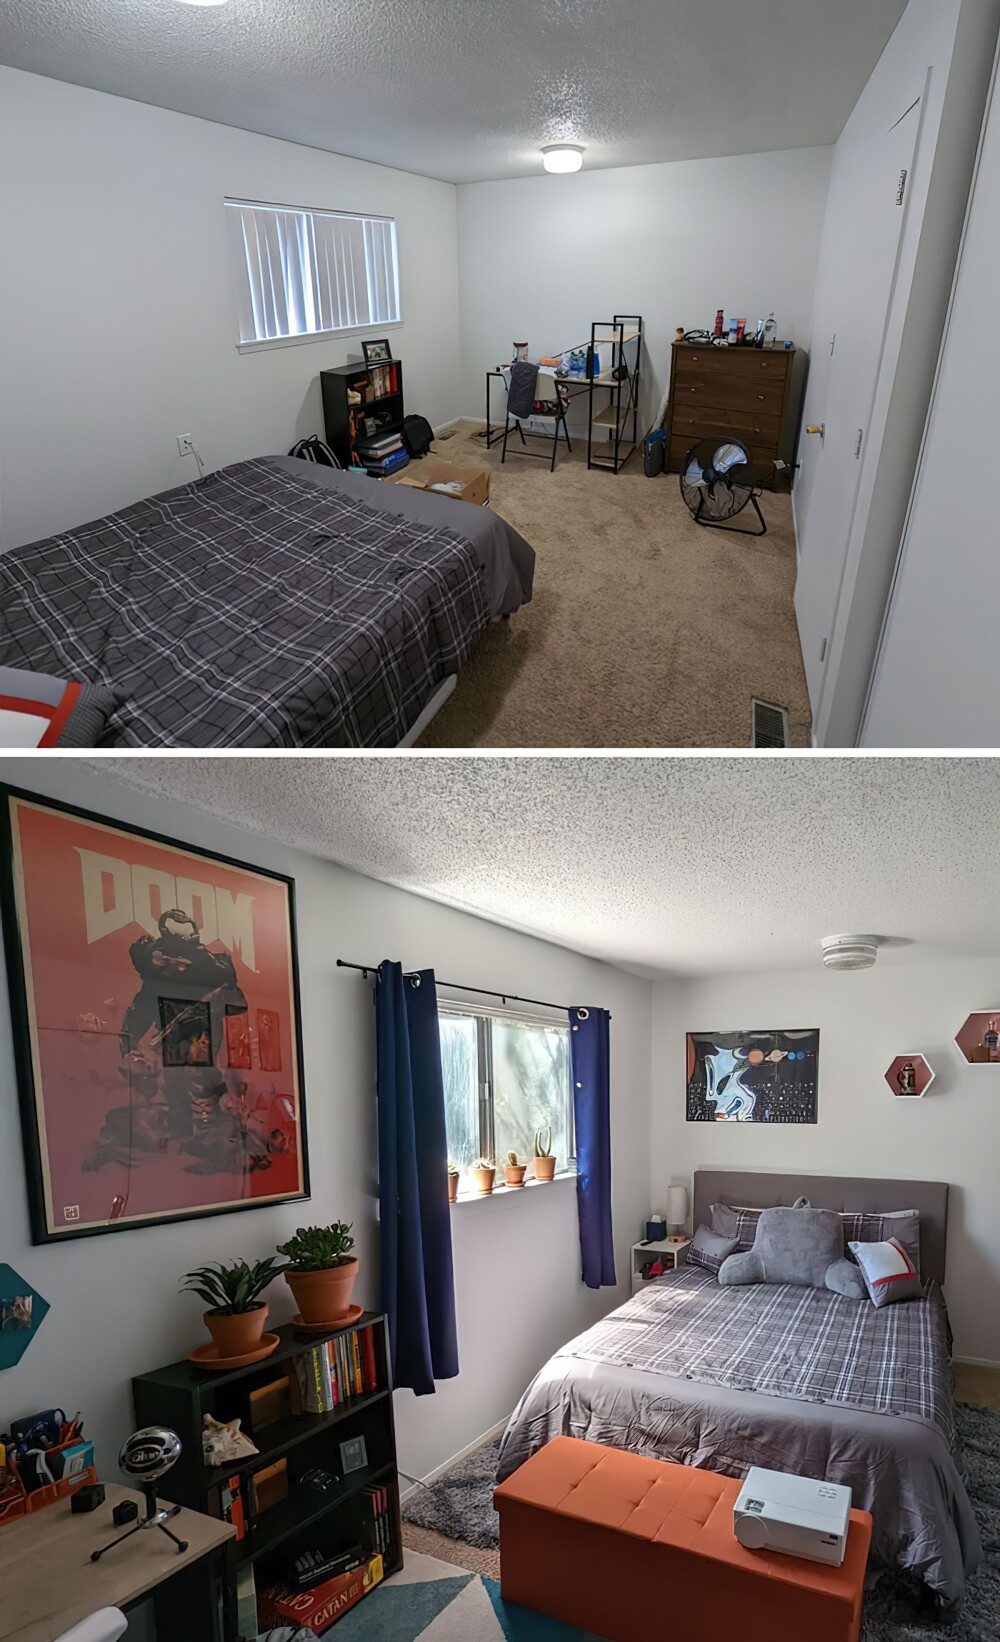 1. «Моя комната в колледже, до и после. Спасибо за все советы!»